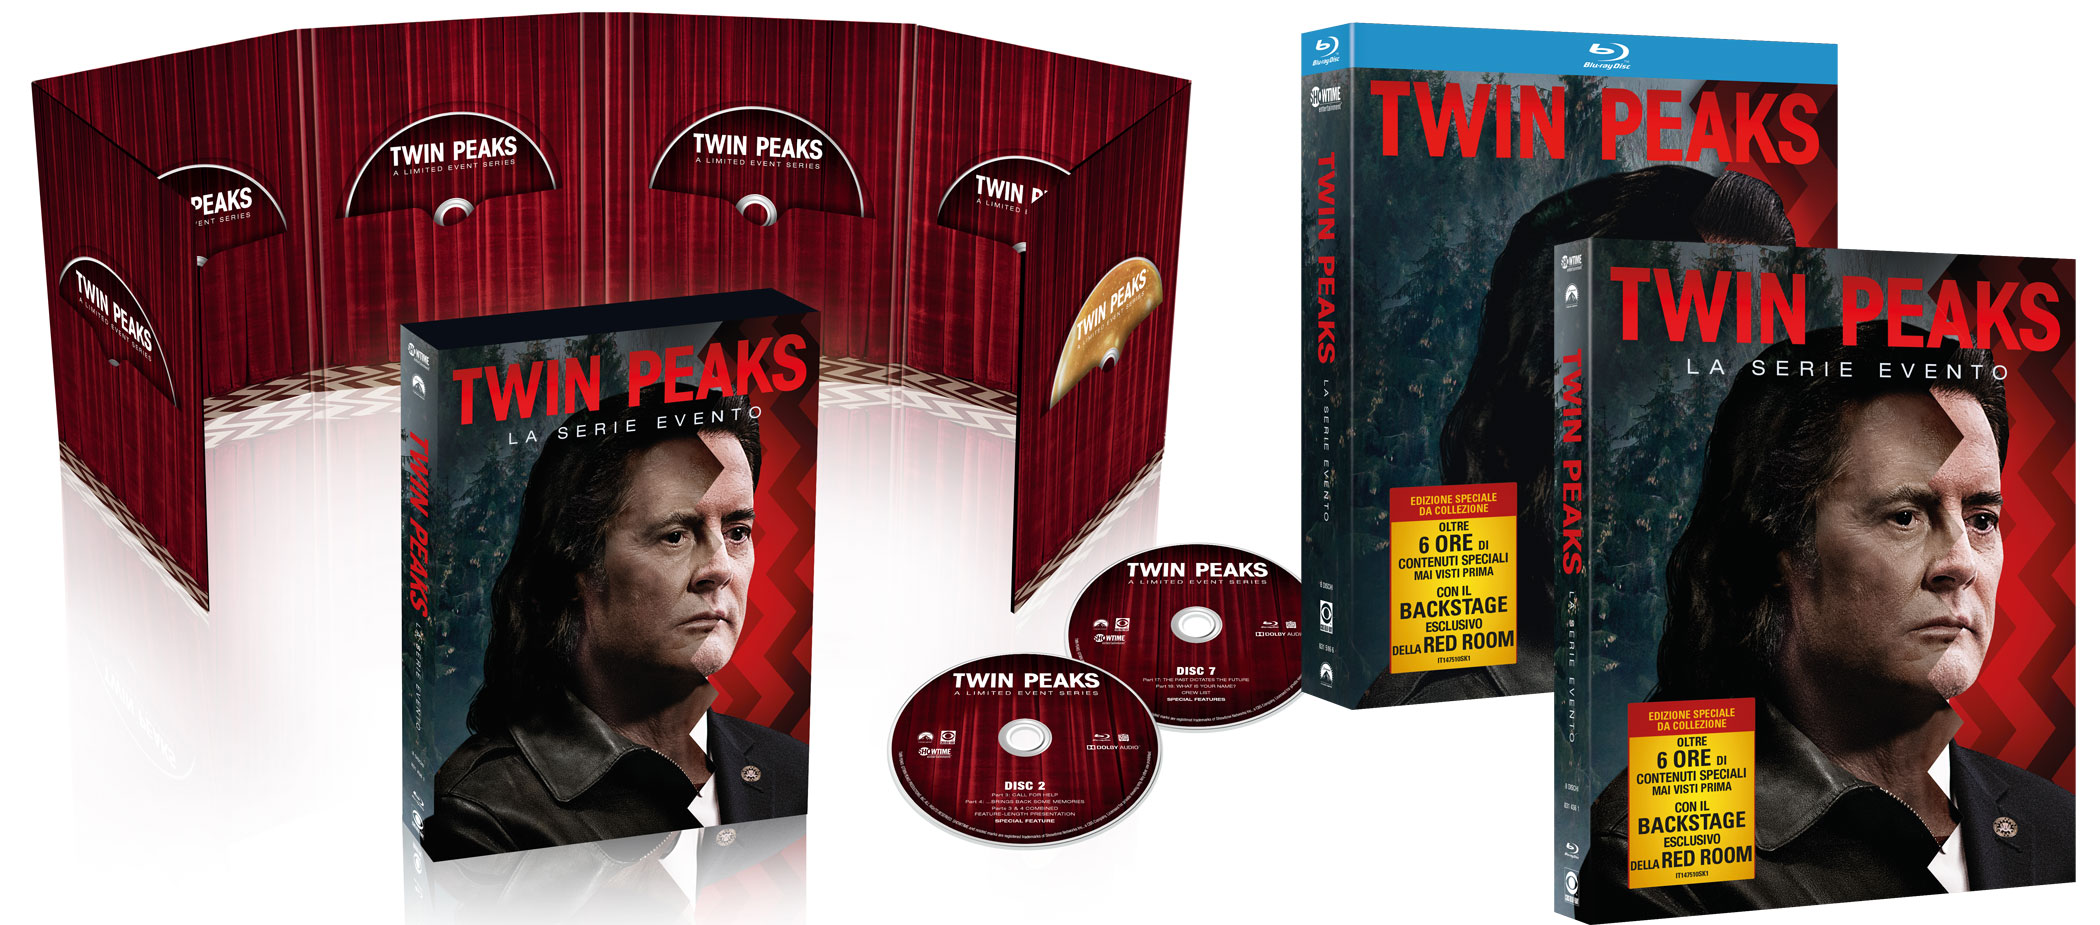 Twin Peaks - La serie evento in DVD e Blu-ray